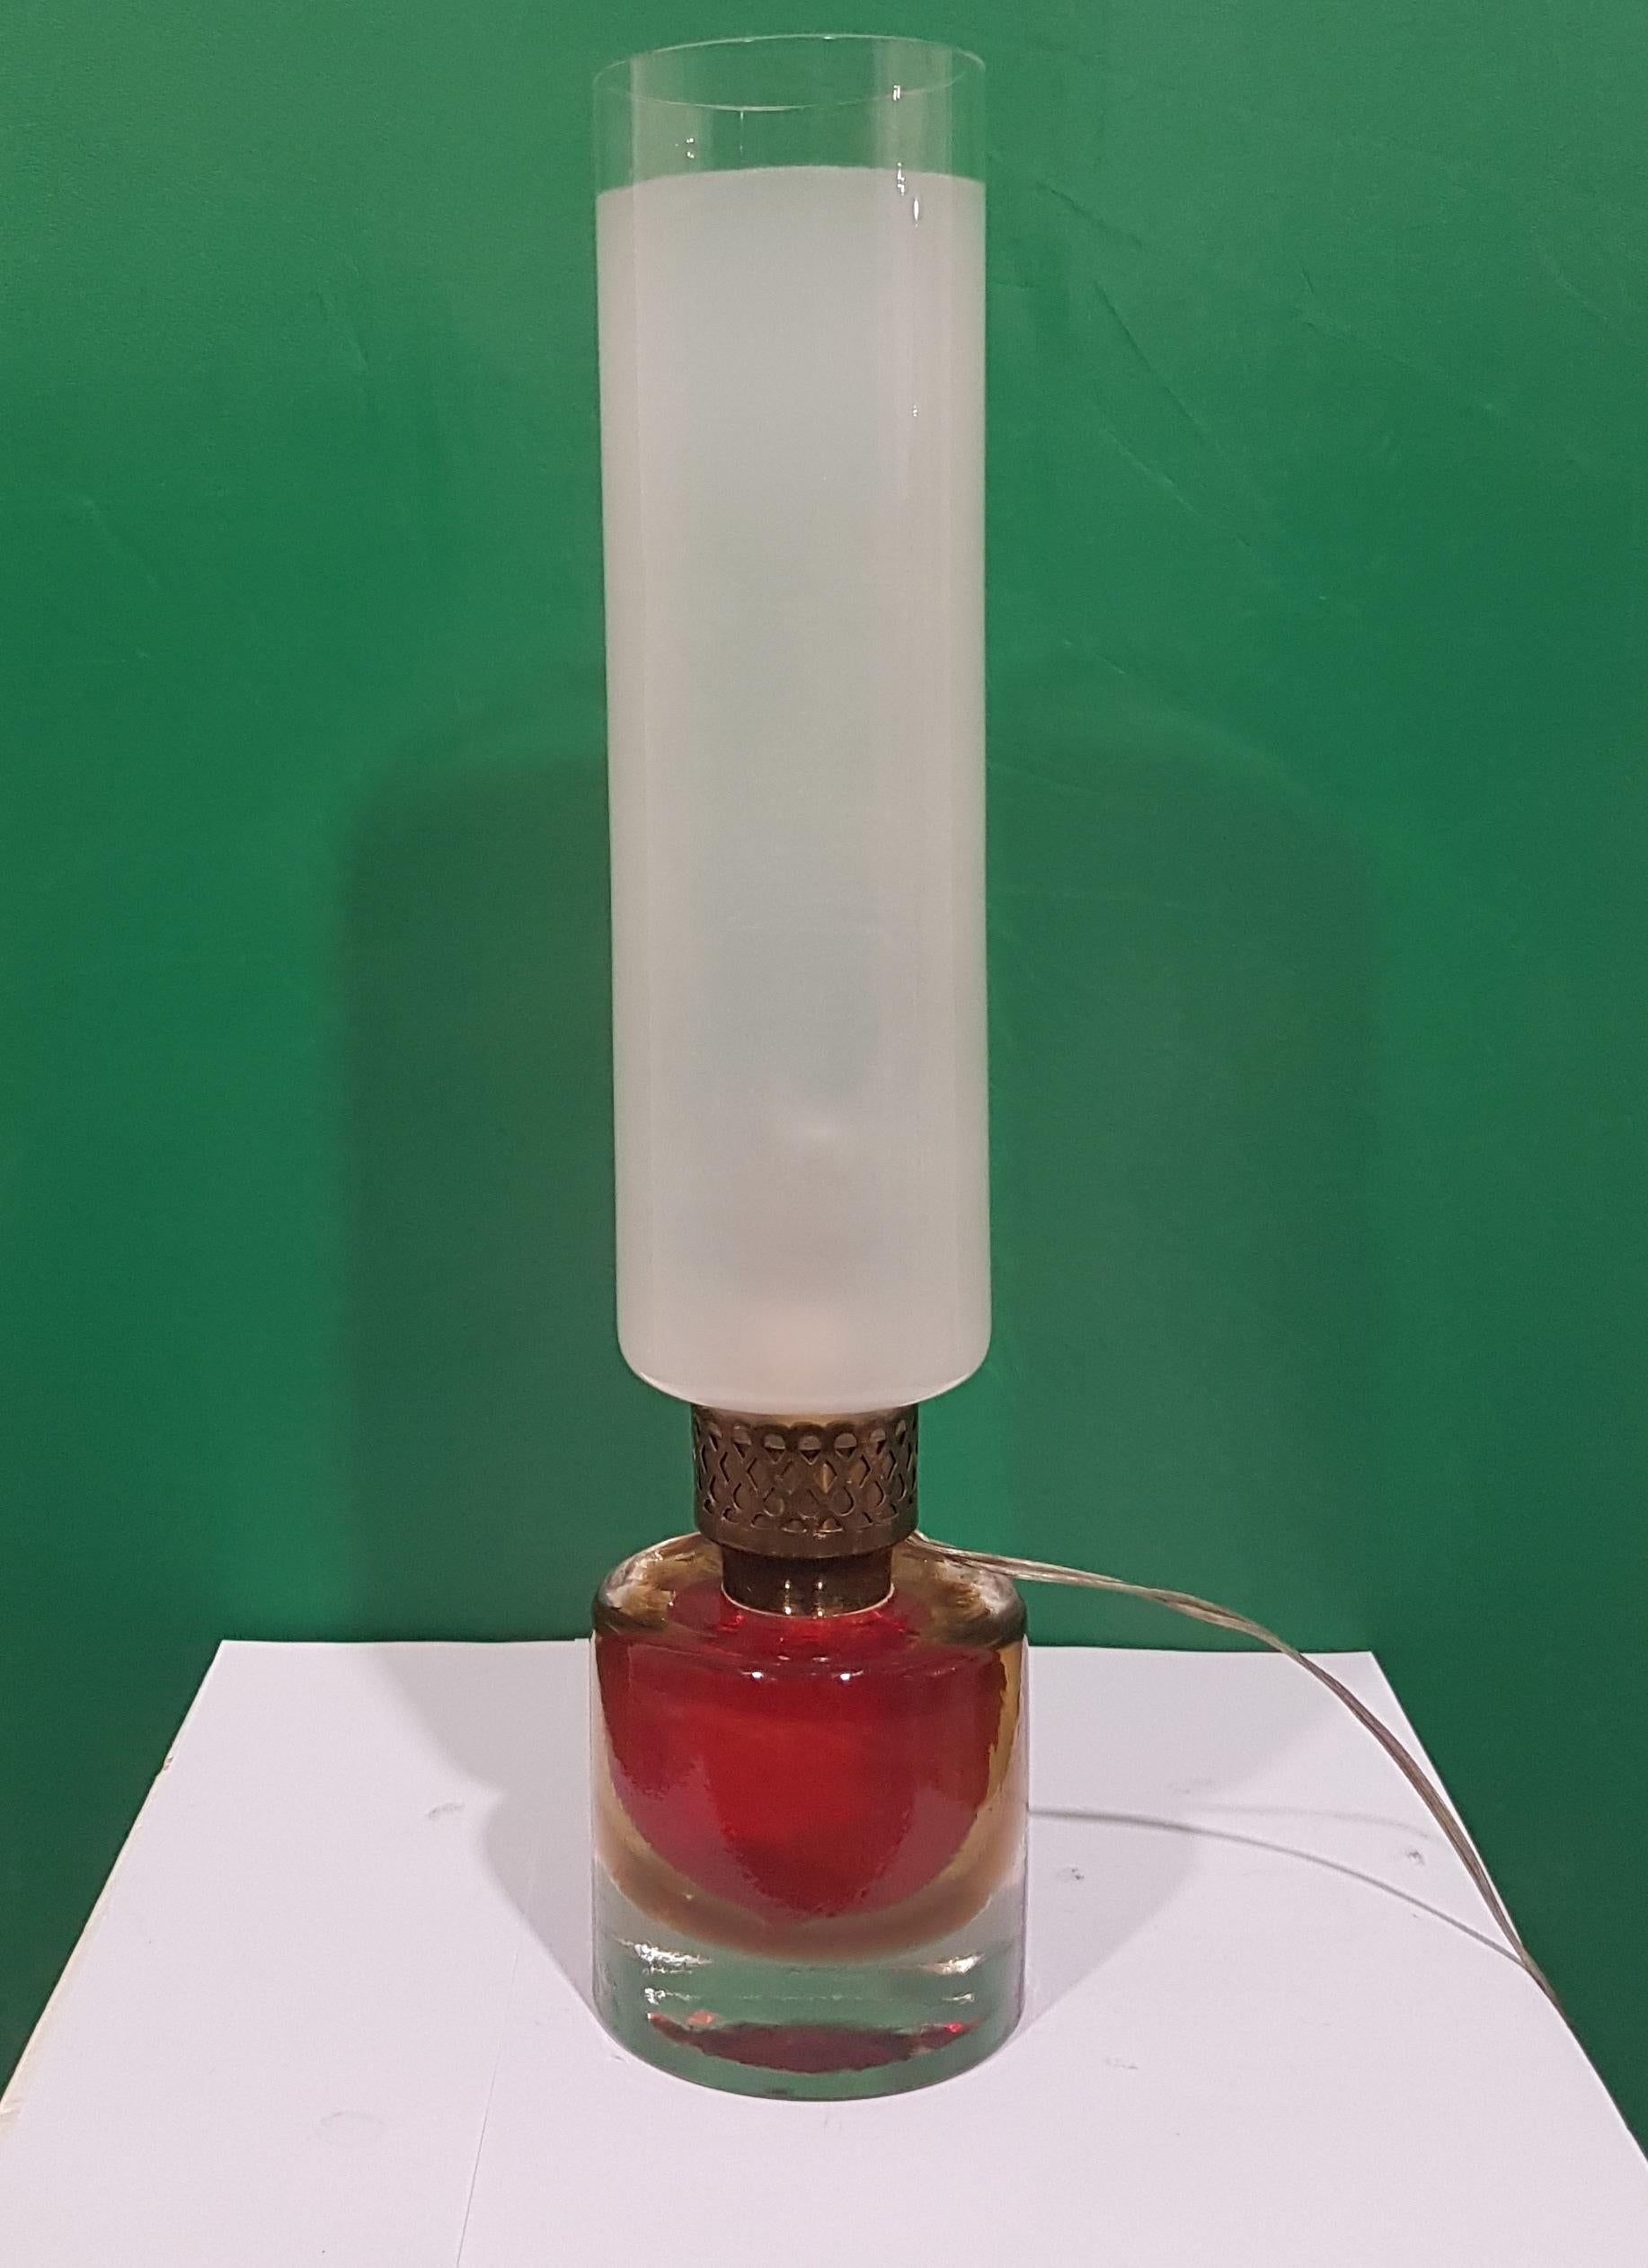 Murano Sommerso glass.
Red table lamp produced by Venini, Murano.
Venini Murano Italia acid stamped signature.